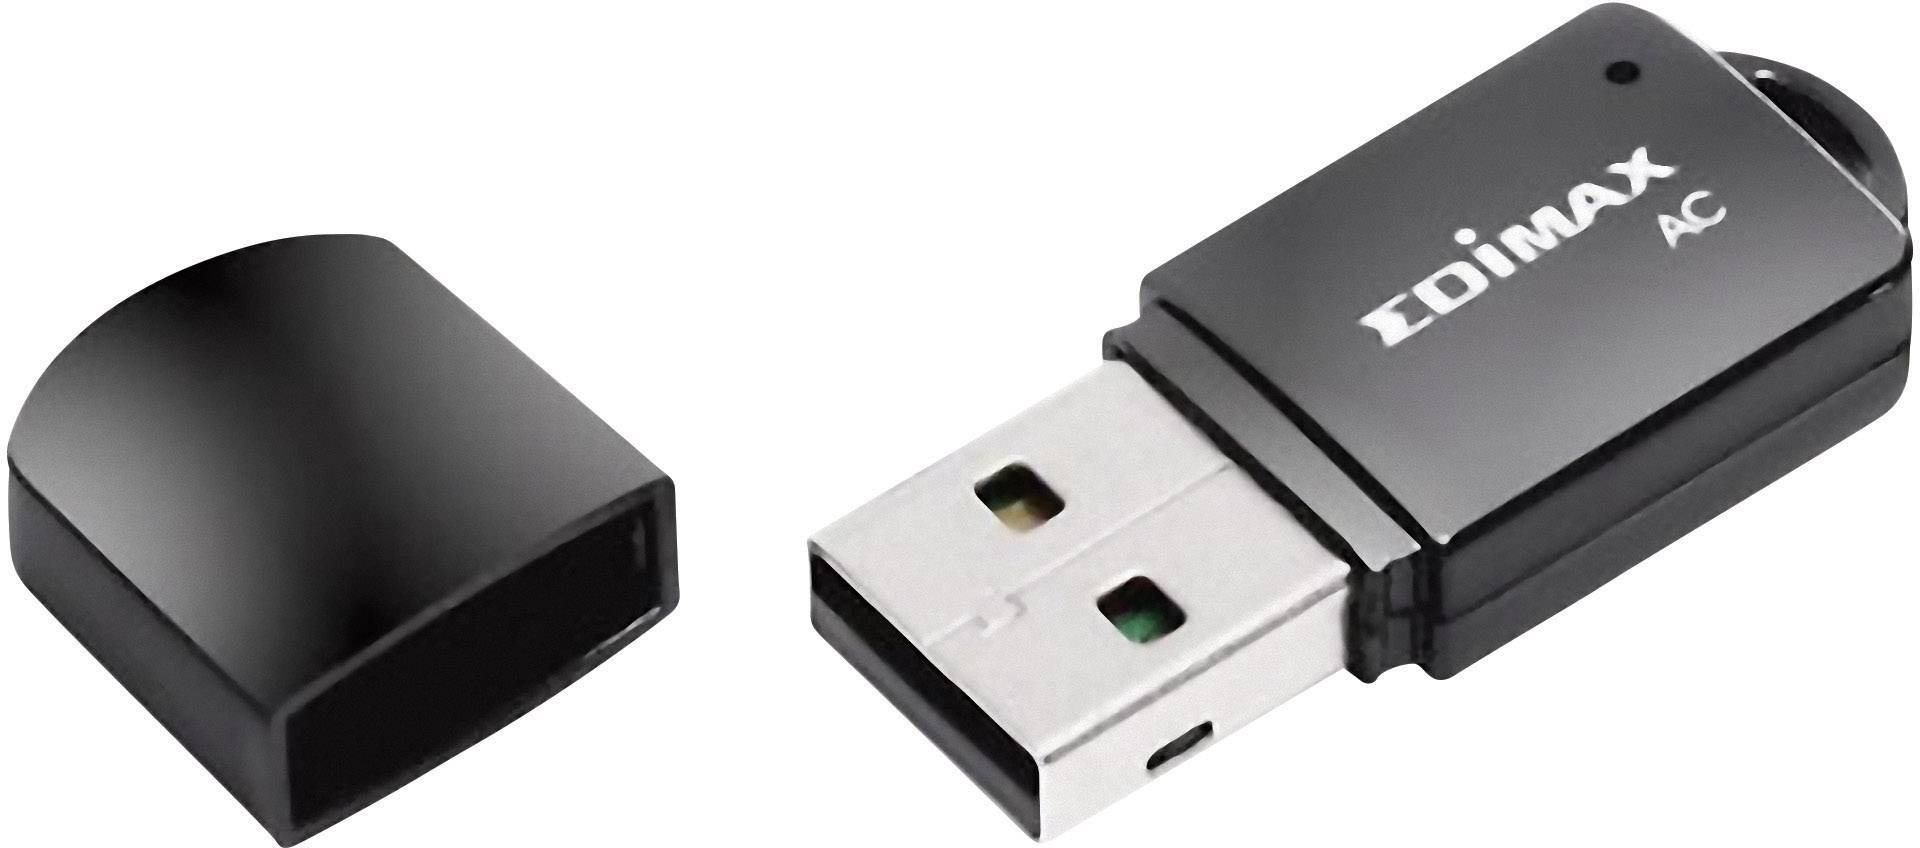 EDIMAX WL-USB Edimax EW-7811UTC (AC600) mini USB retail